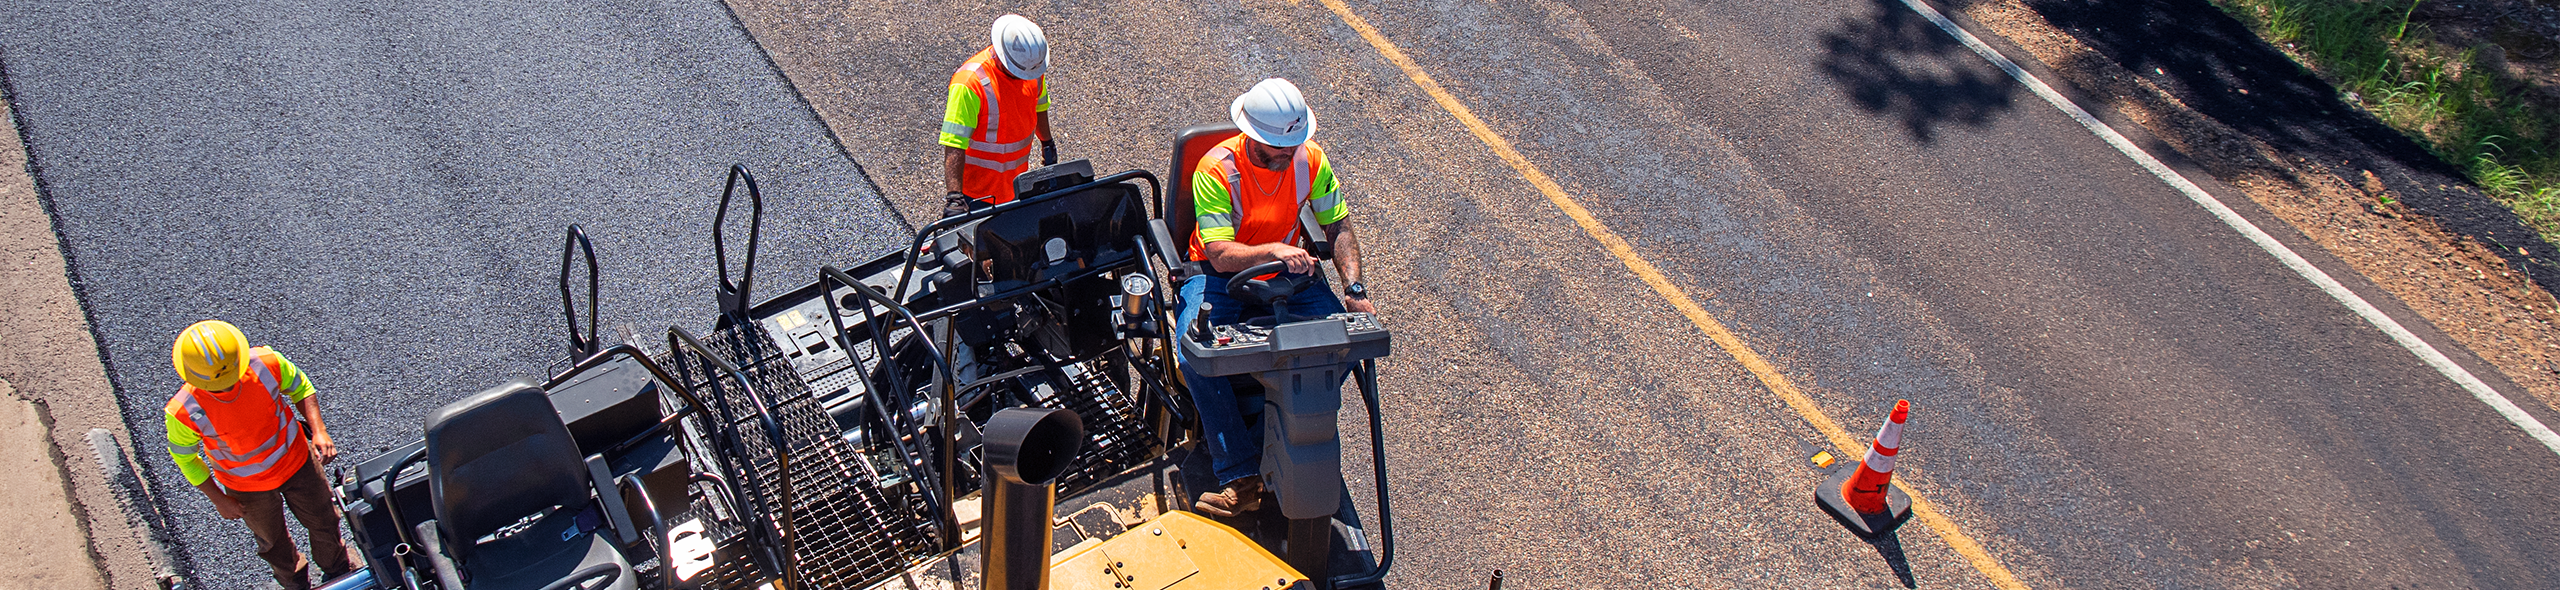 Tres trabajadores de mantenimiento de carreteras de TxDOT agregan superposición a la carretera vista desde arriba